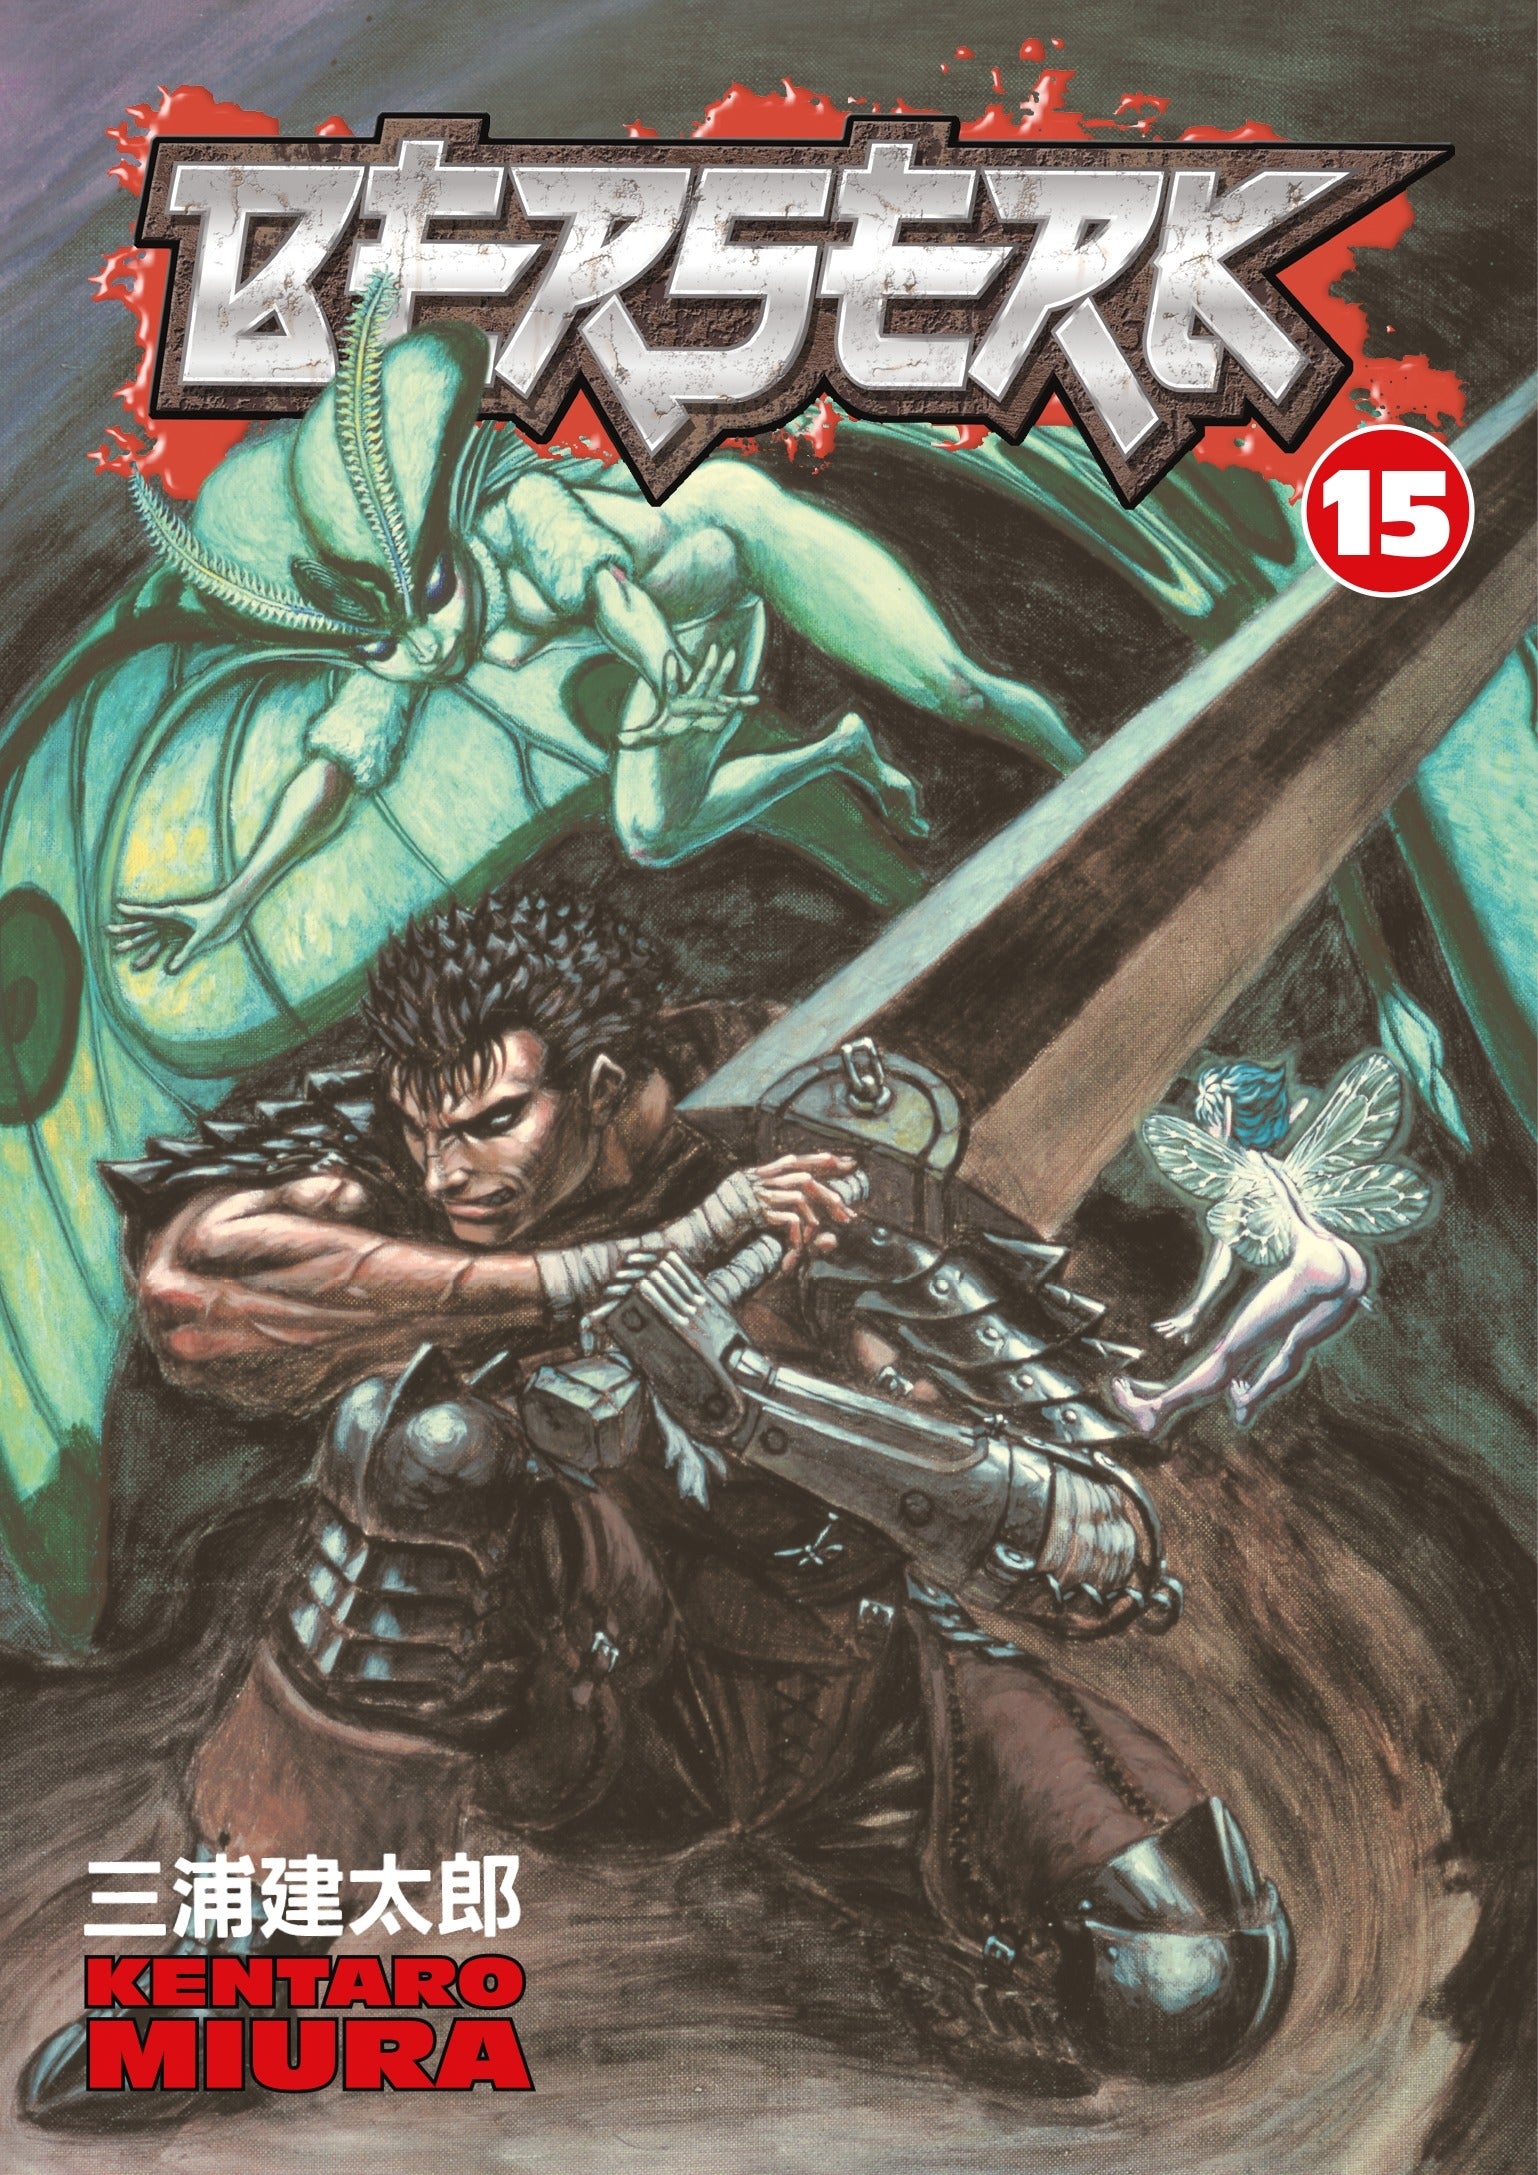 Berserk Vol. 15 (Manga)